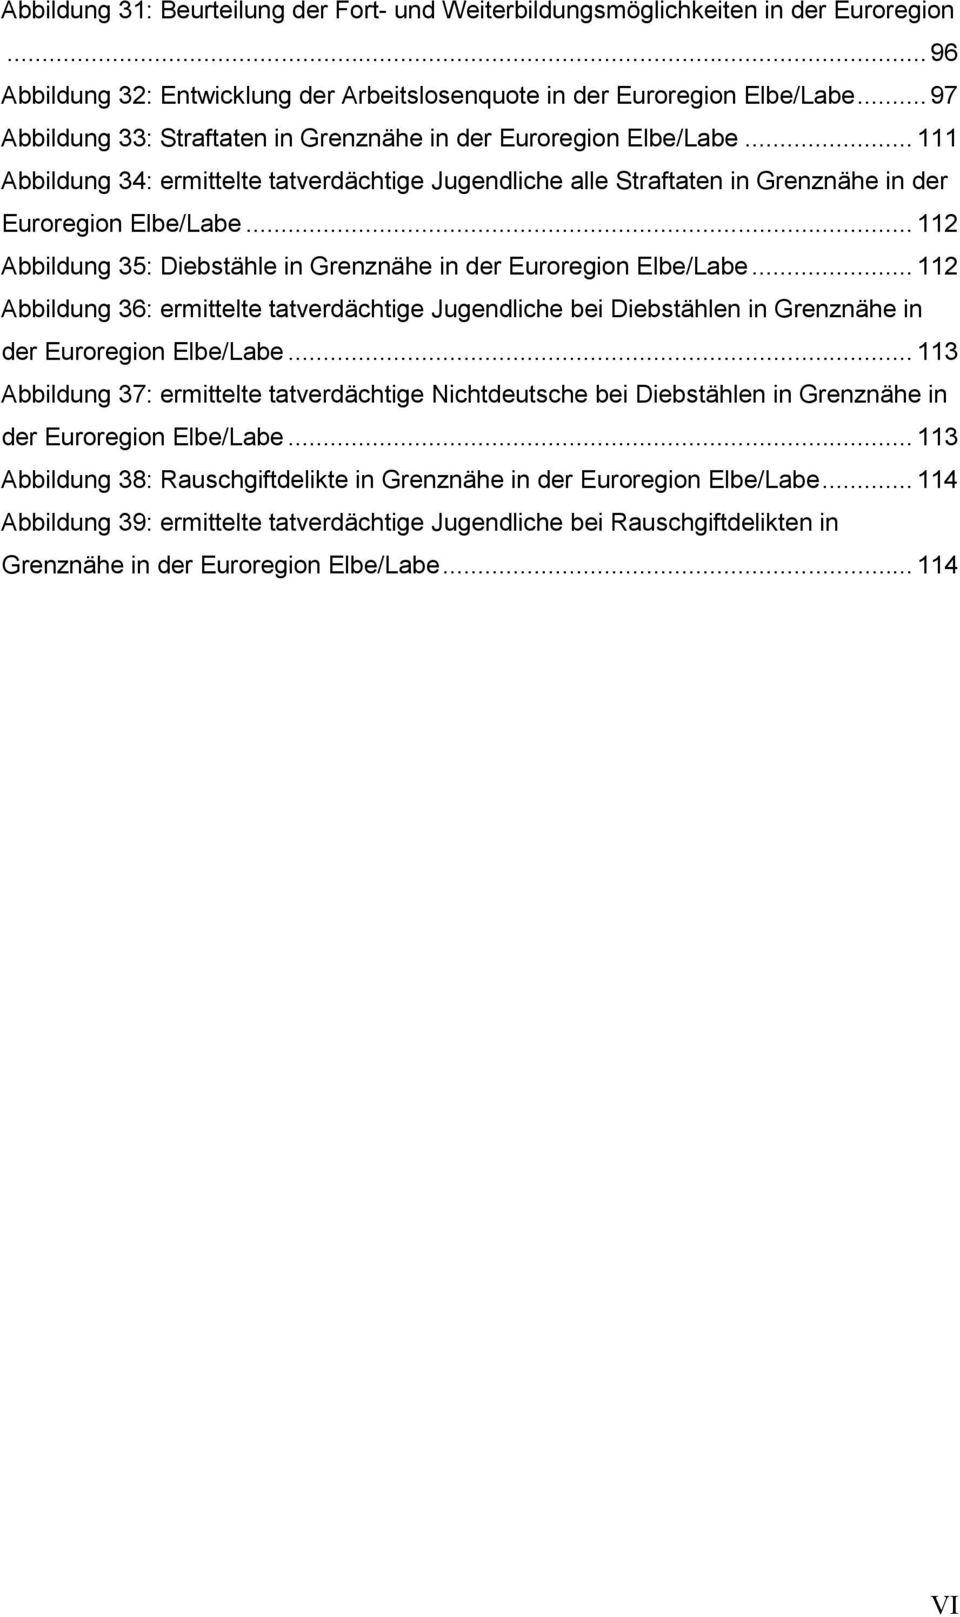 .. 112 Abbildung 35: Diebstähle in Grenznähe in der Euroregion Elbe/Labe... 112 Abbildung 36: ermittelte tatverdächtige Jugendliche bei Diebstählen in Grenznähe in der Euroregion Elbe/Labe.